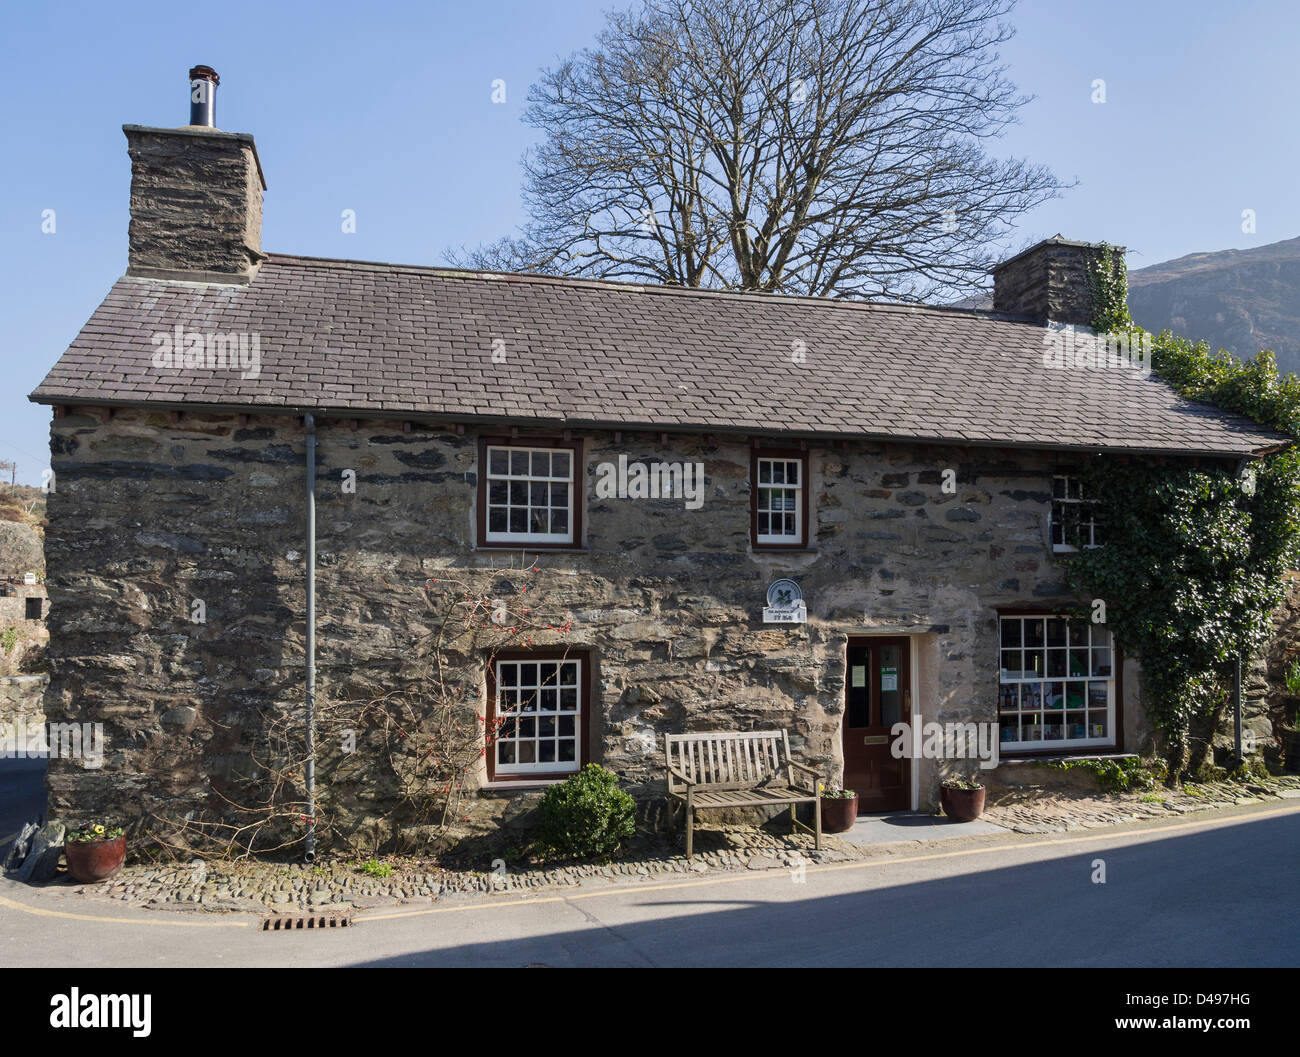 Traditionellen alten walisischen Haus, 17. Jahrhundert, das Ty Isaf ist heute ein Shop und Ausstellung, älteste Gebäude in Beddgelert, Wales, UK Stockfoto